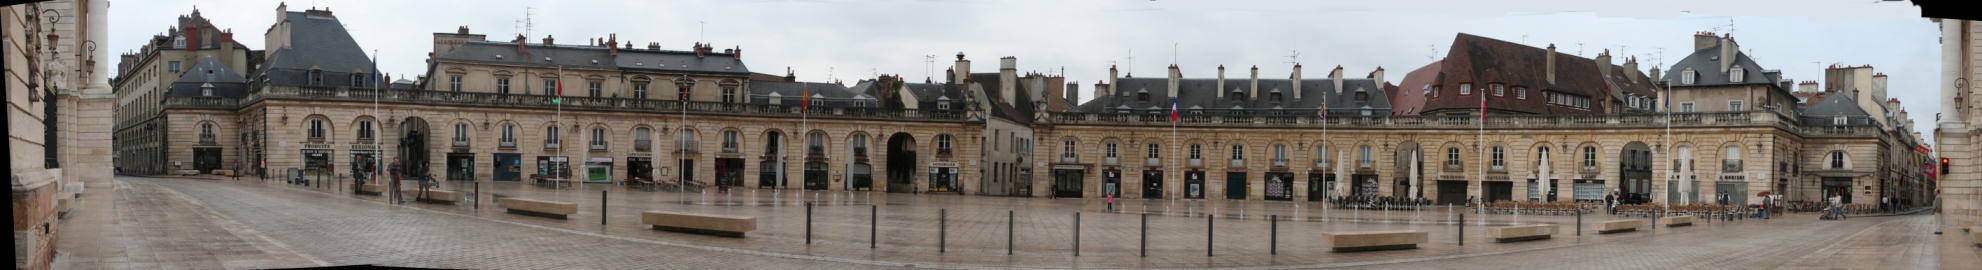 Dijon, place de la Libération, ex place Royale. Place en hémicycle conçue en 1685 par Jules Hardouin Mansart.